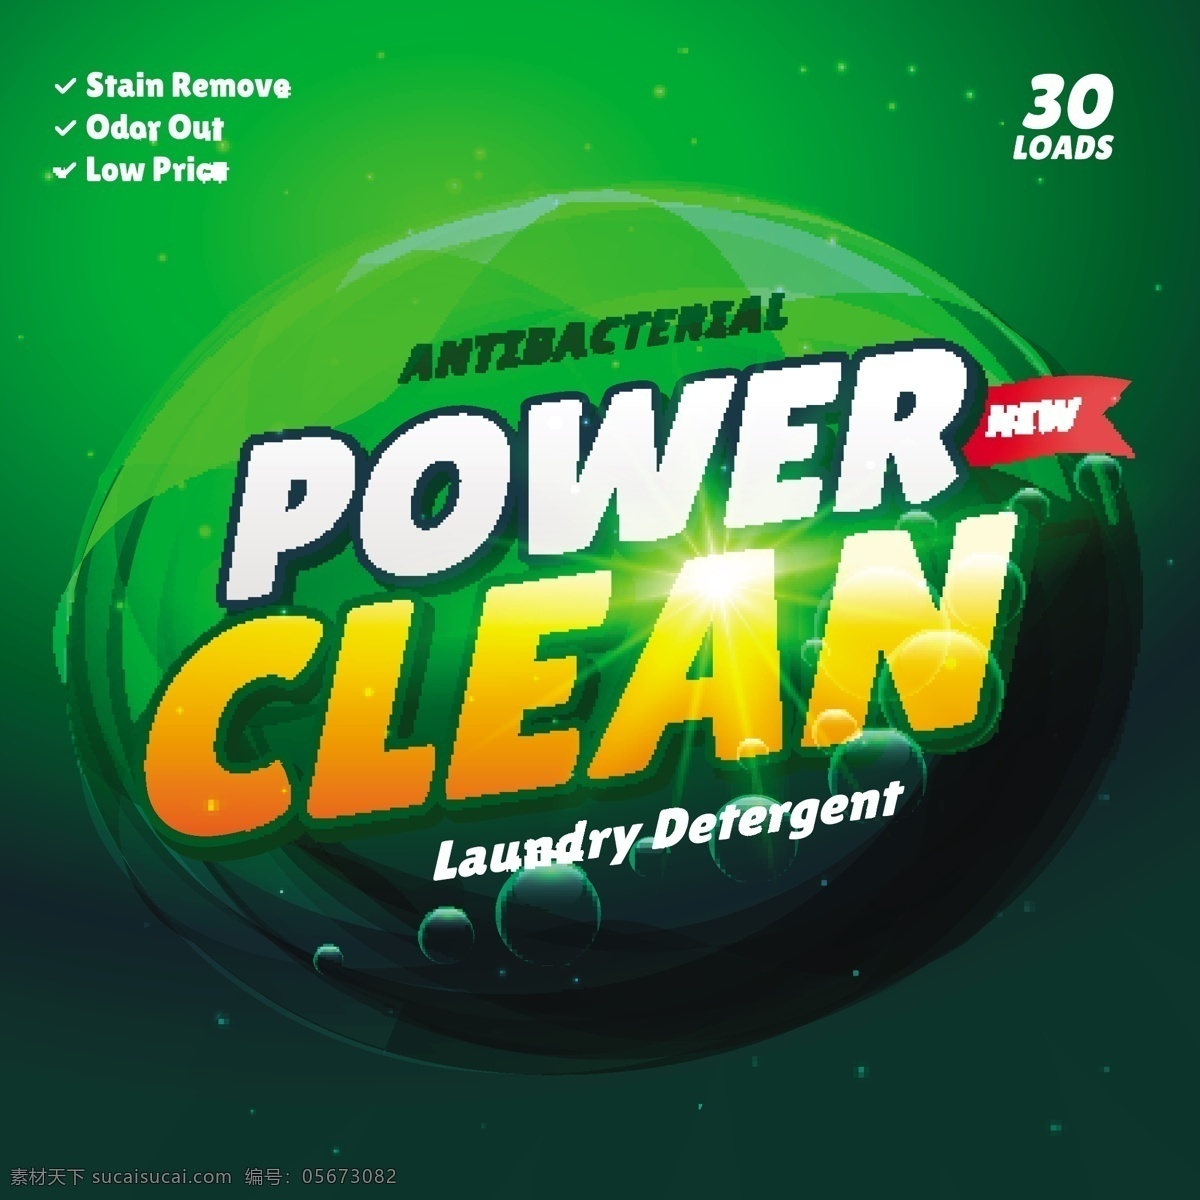 清洁 产品 绿色 包装 背景 抽象 水 模板 创意 卫生间 浴室 洗衣房 品牌 布料 肥皂 洗衣粉 清洁剂 卫生 配方